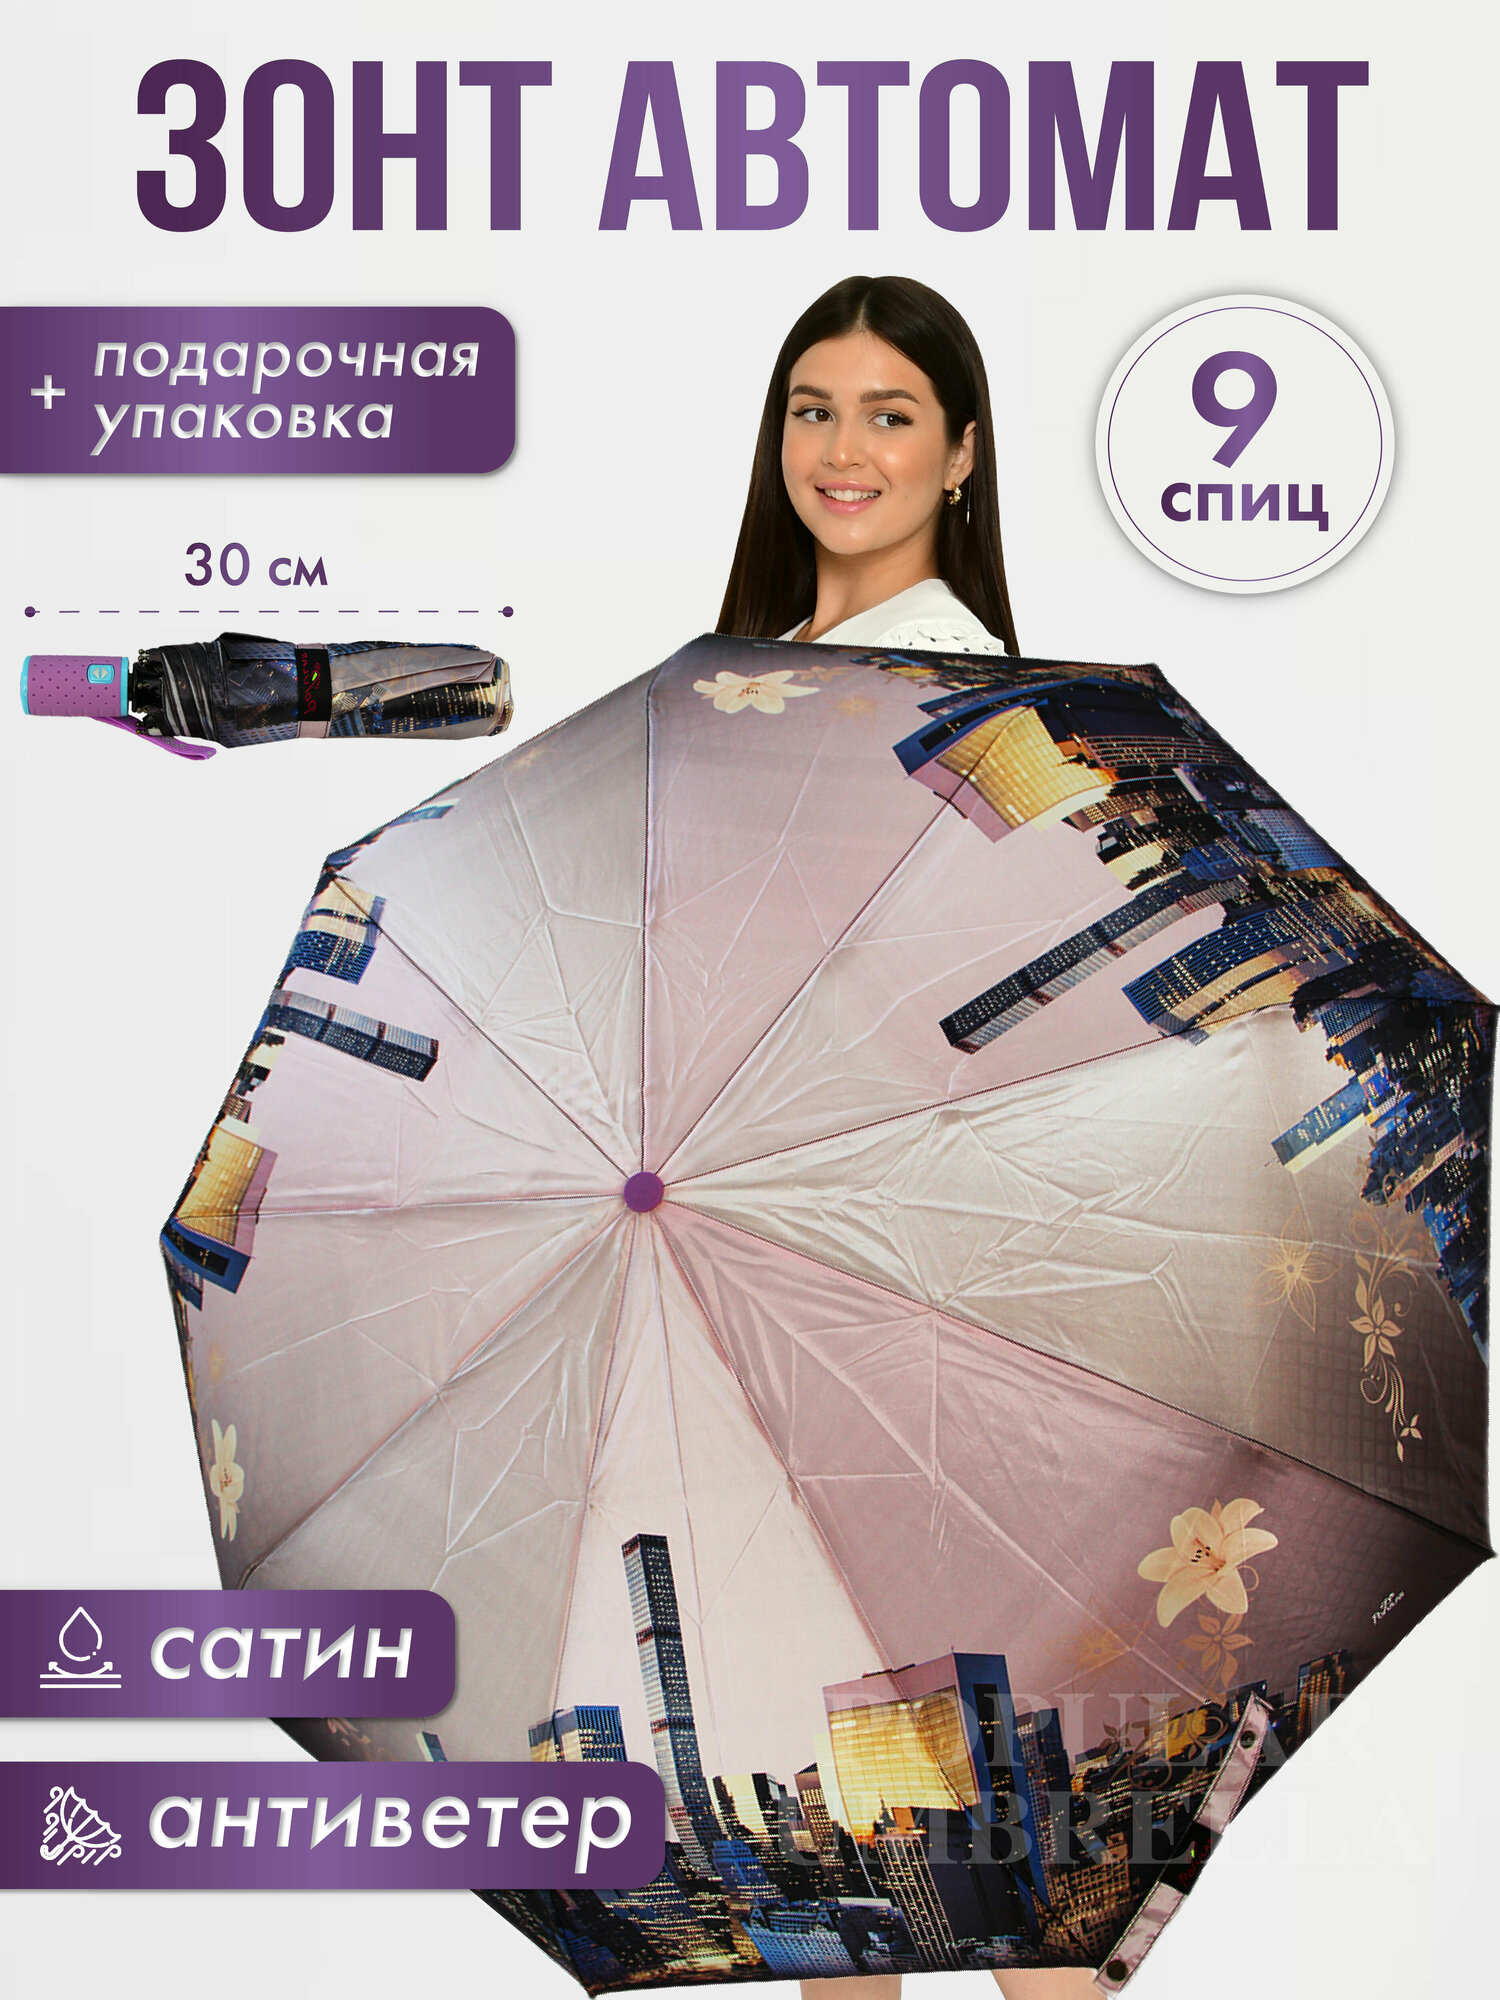 Мини-зонт Popular